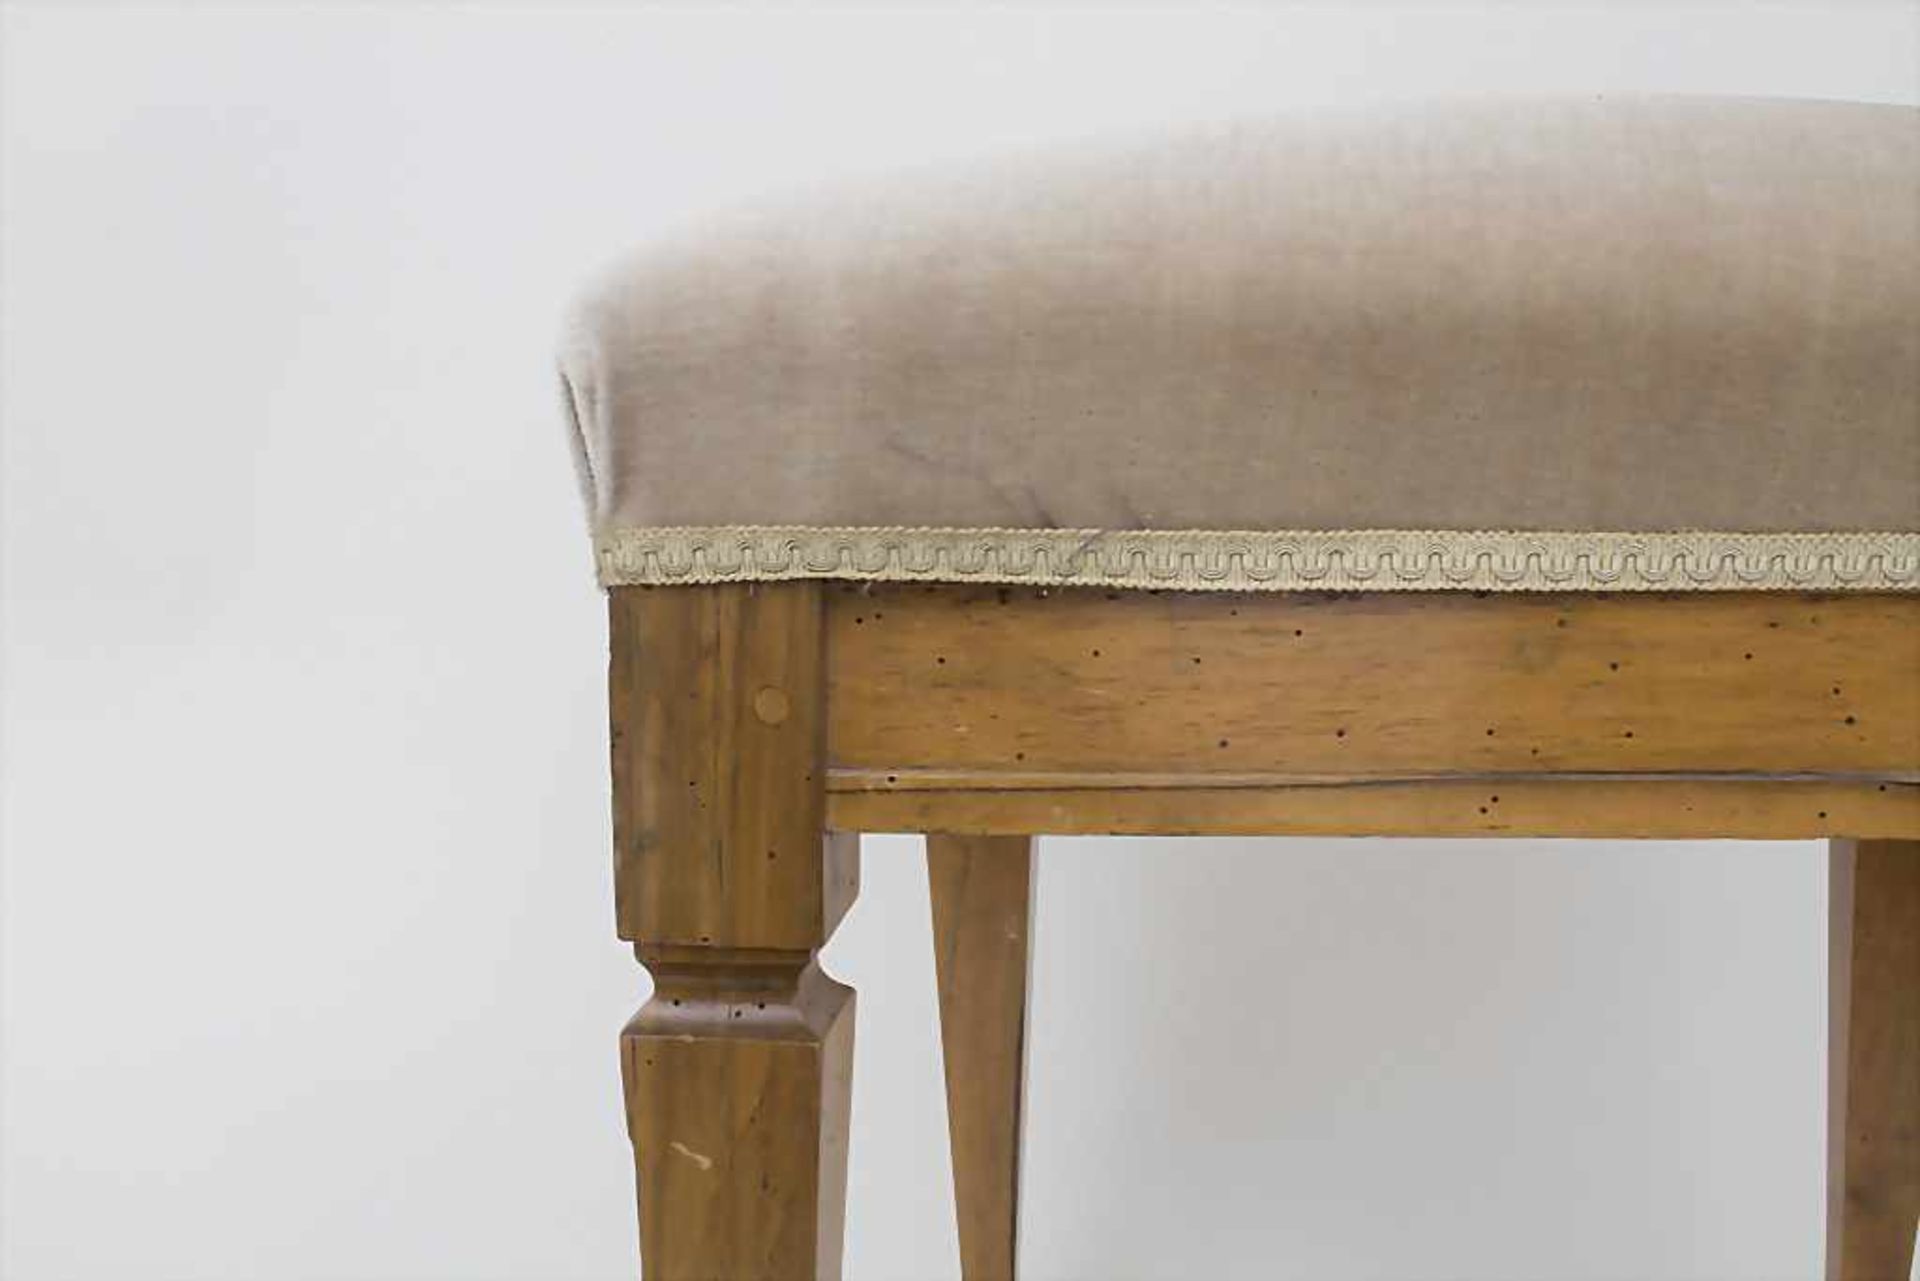 Klassizismus Stuhl / A classicism chair, um 1800 - Image 4 of 5